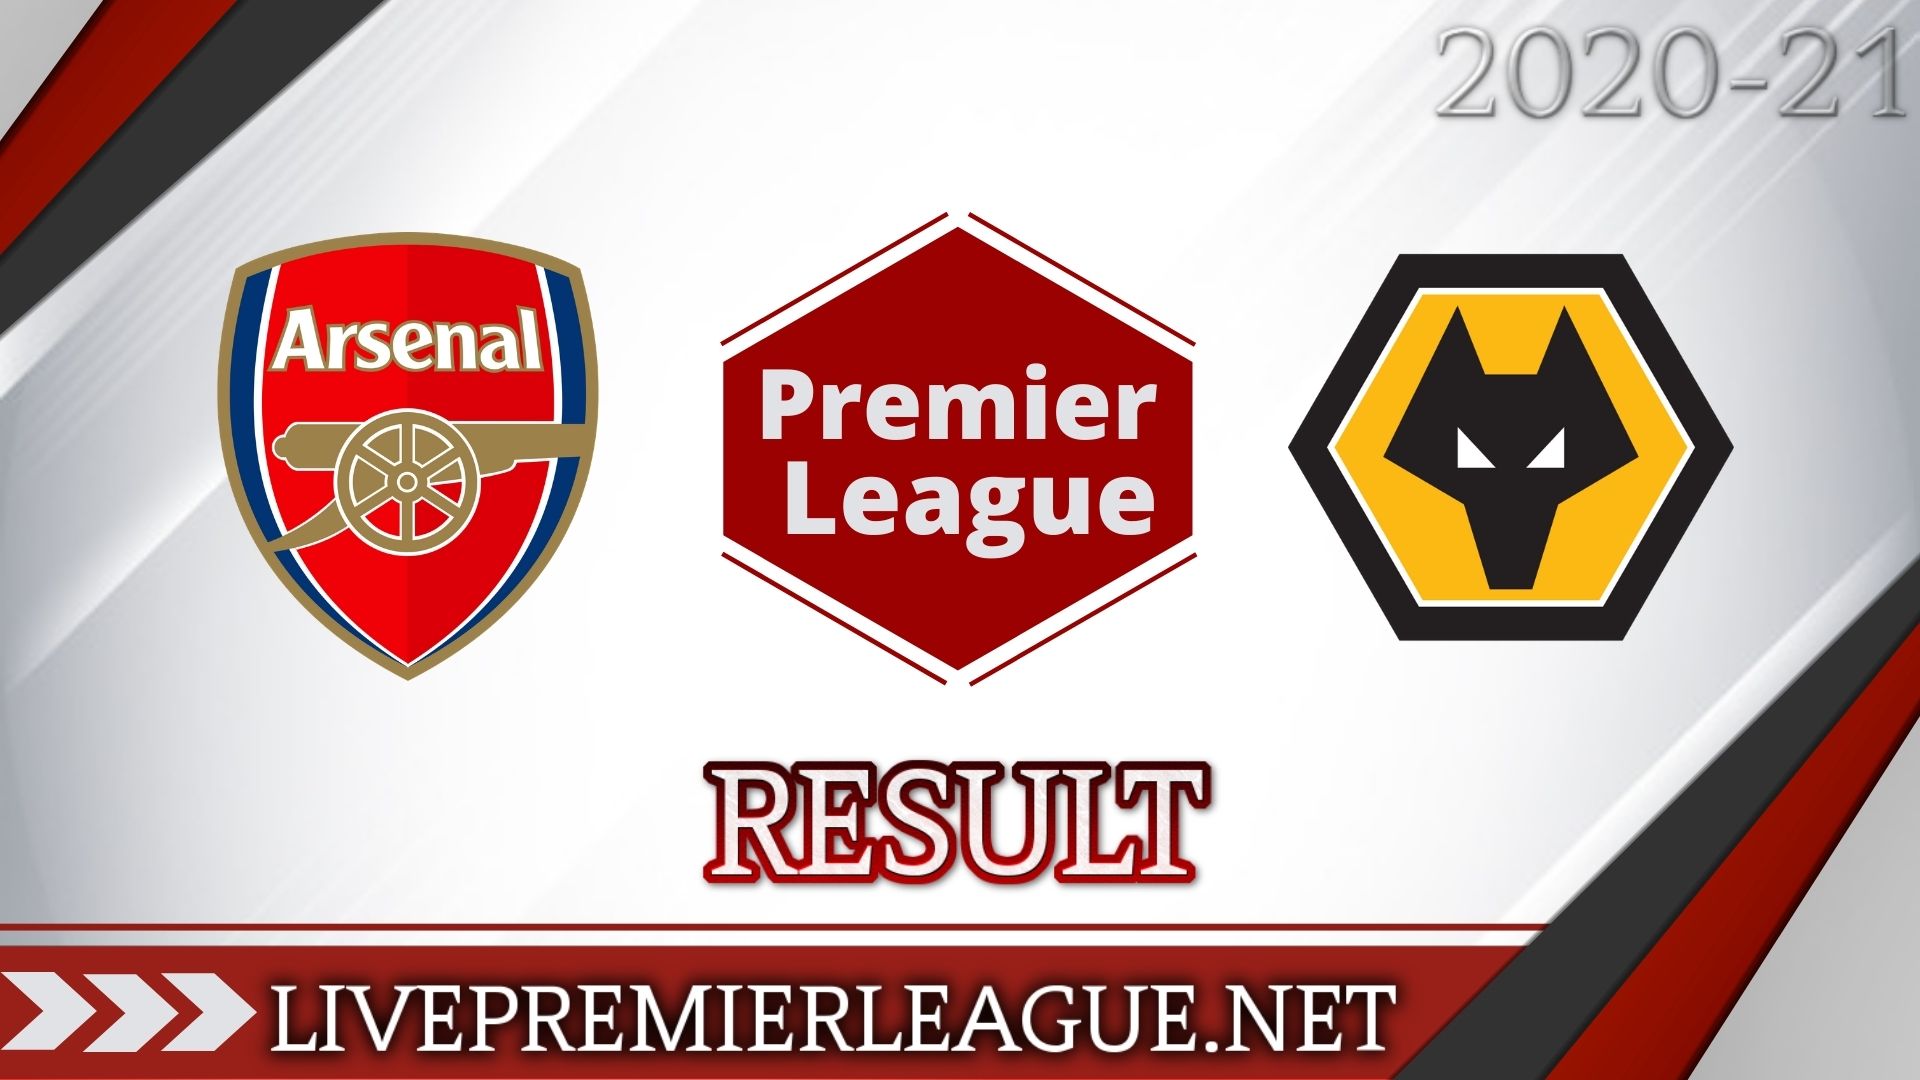 Arsenal Vs Wolverhampton Wanderers | Week 10 Result 2020